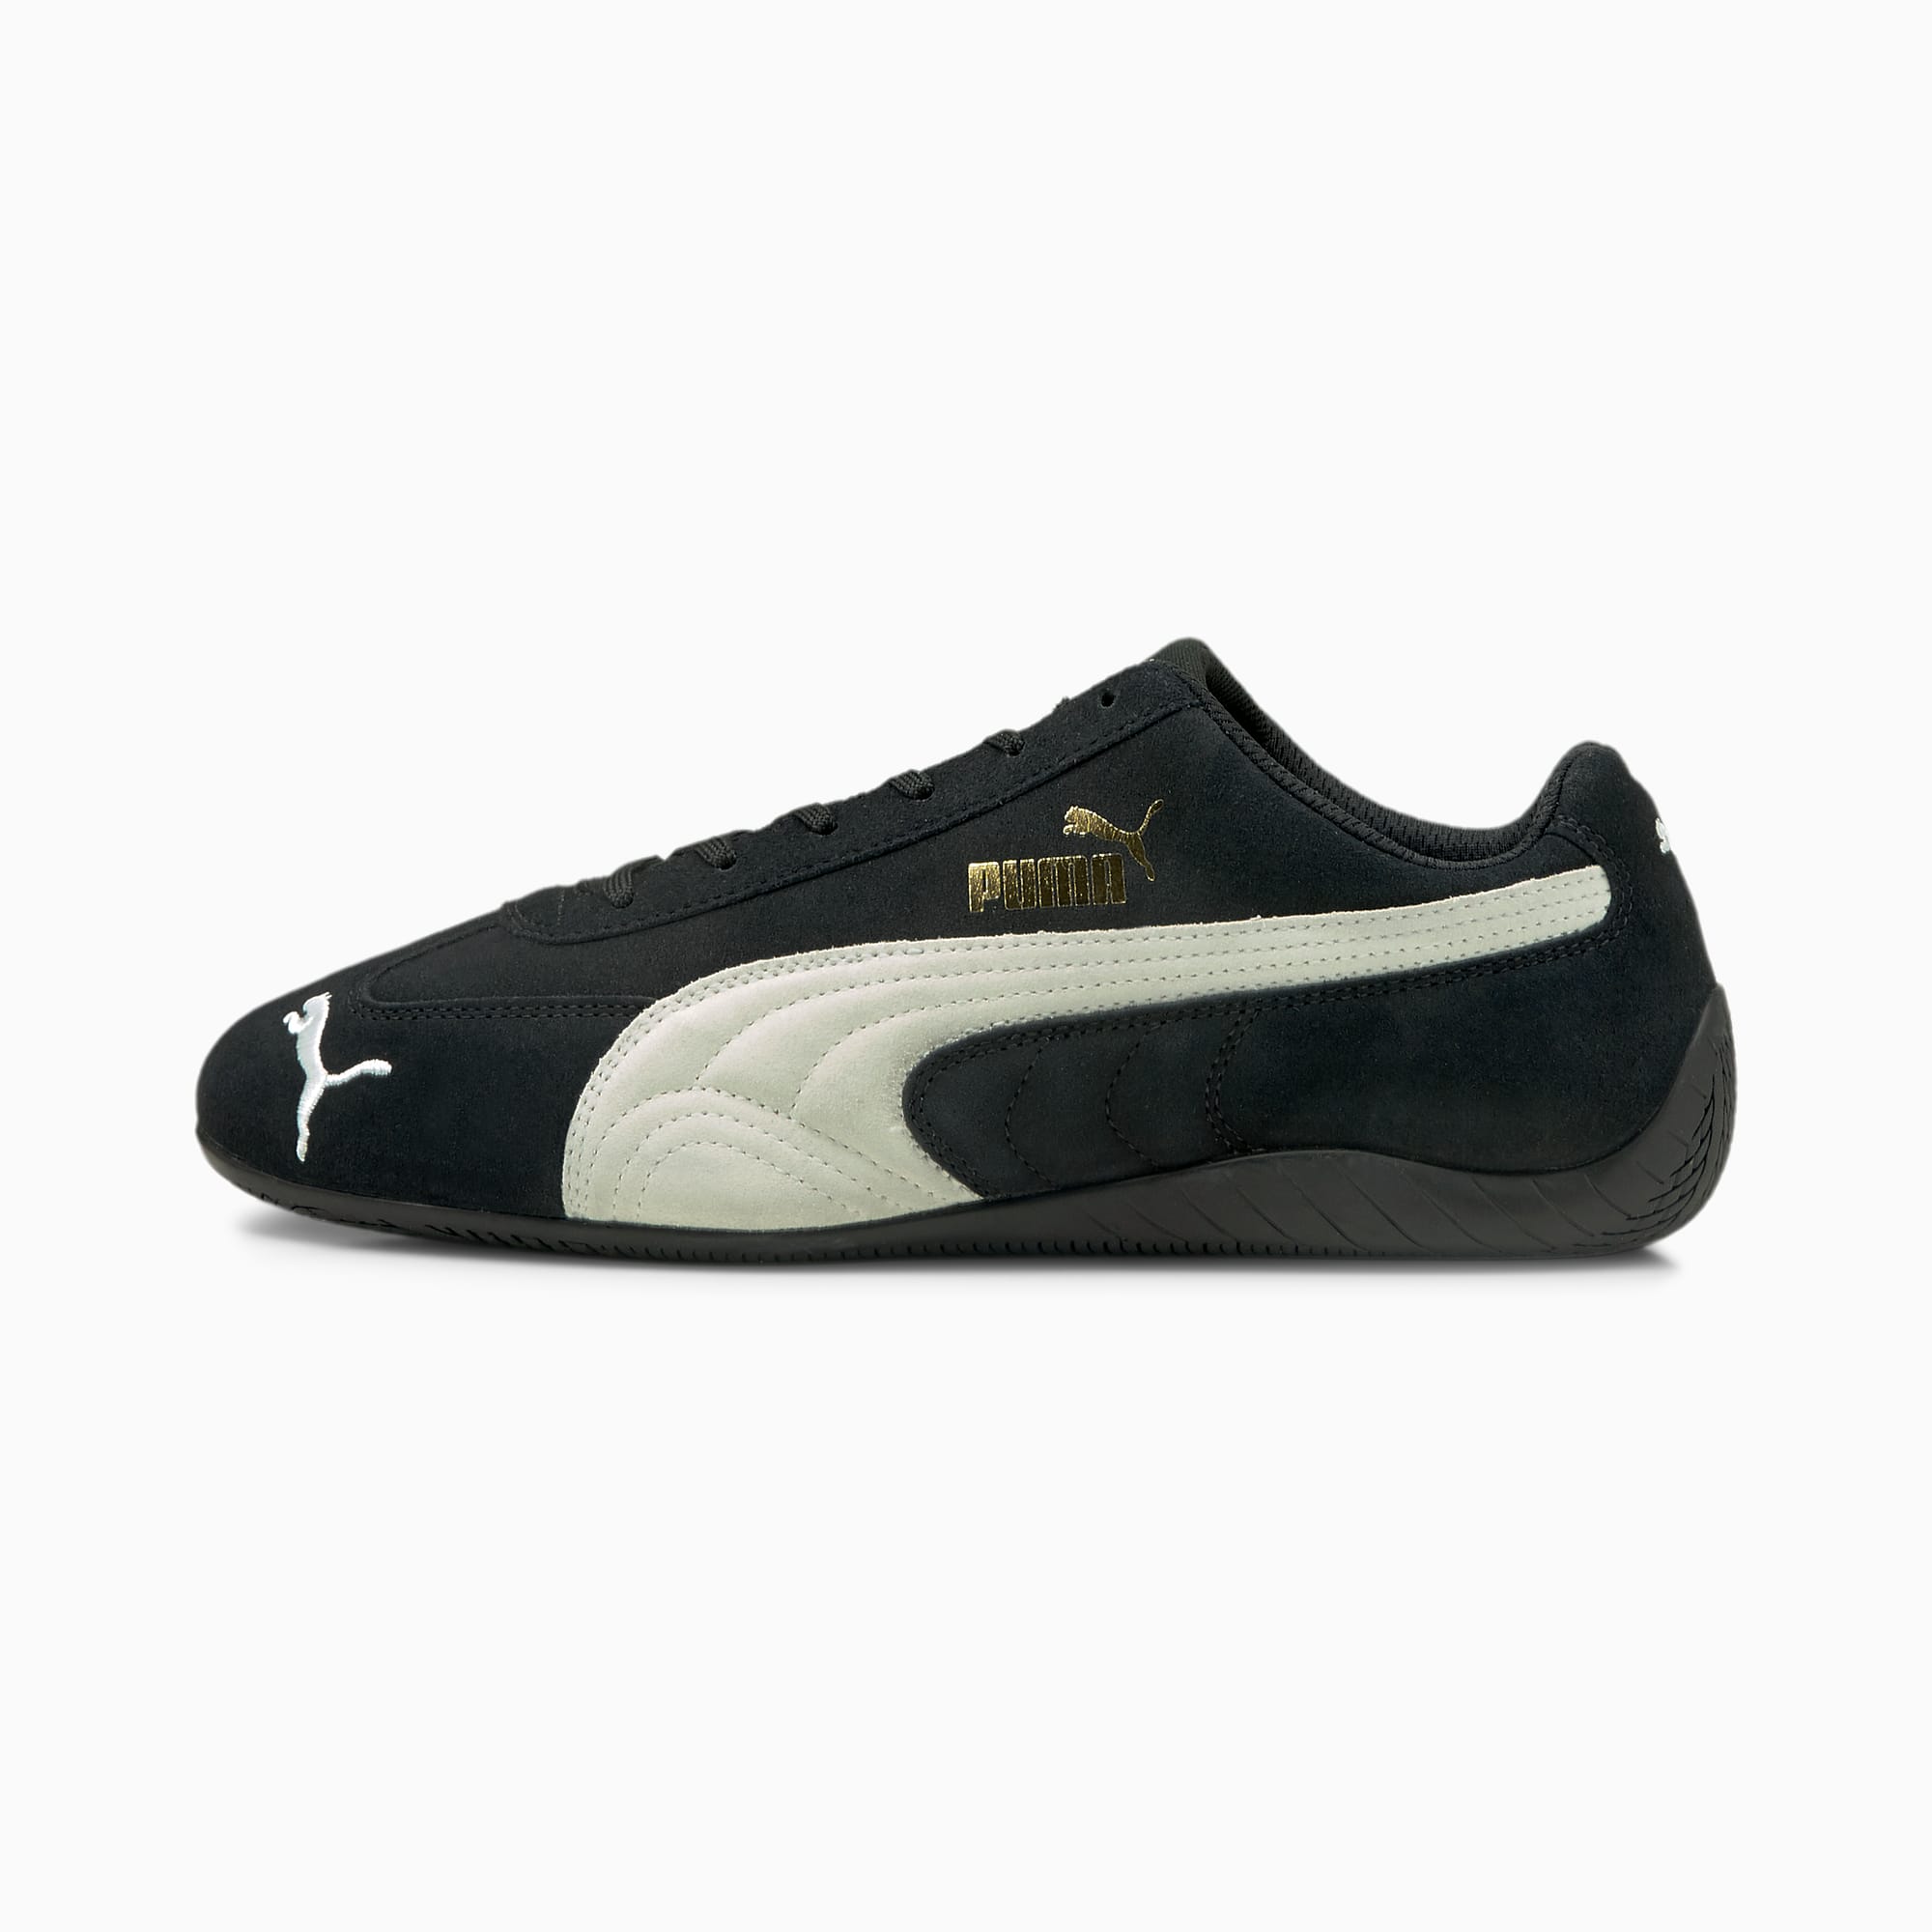 PUMA Chaussure Baskets SpeedCat LS, Noir/Blanc, Taille 36, Chaussures